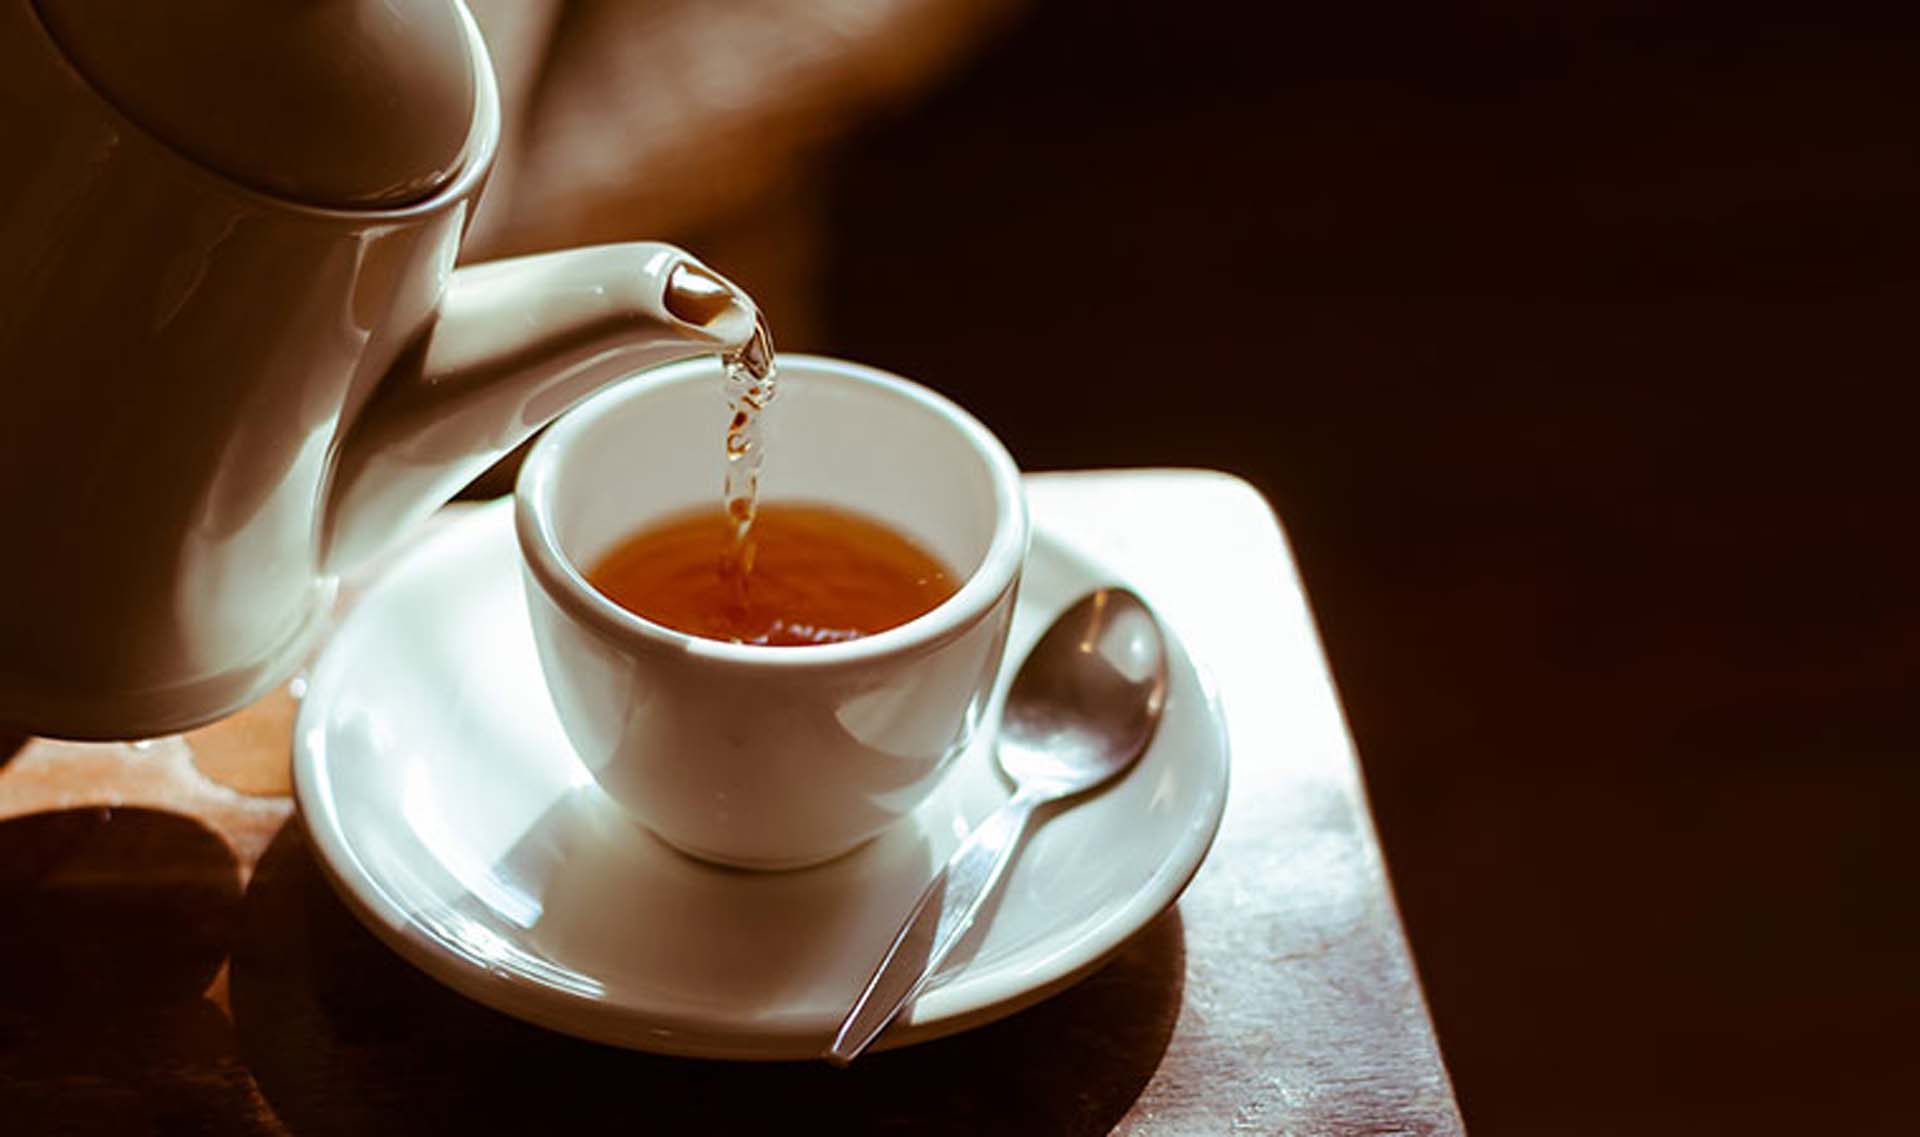 Sudan sonra en son tüketilen çay kansere yol açıyor!